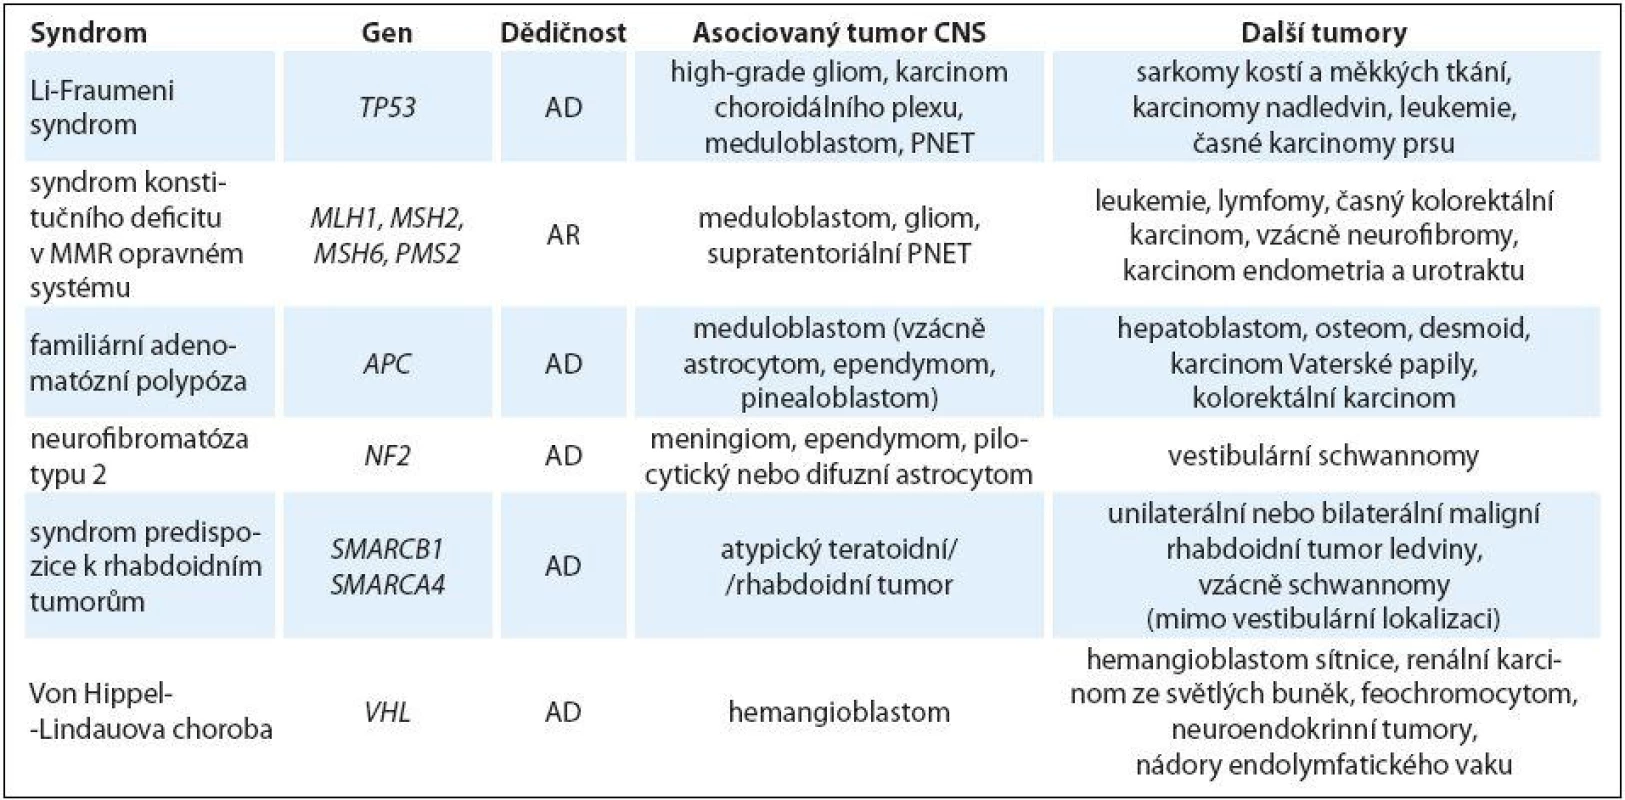 Hereditární nádorové predispozice primárně bez jiných než onkologických projevů s rizikem nádorů CNS u dětí.